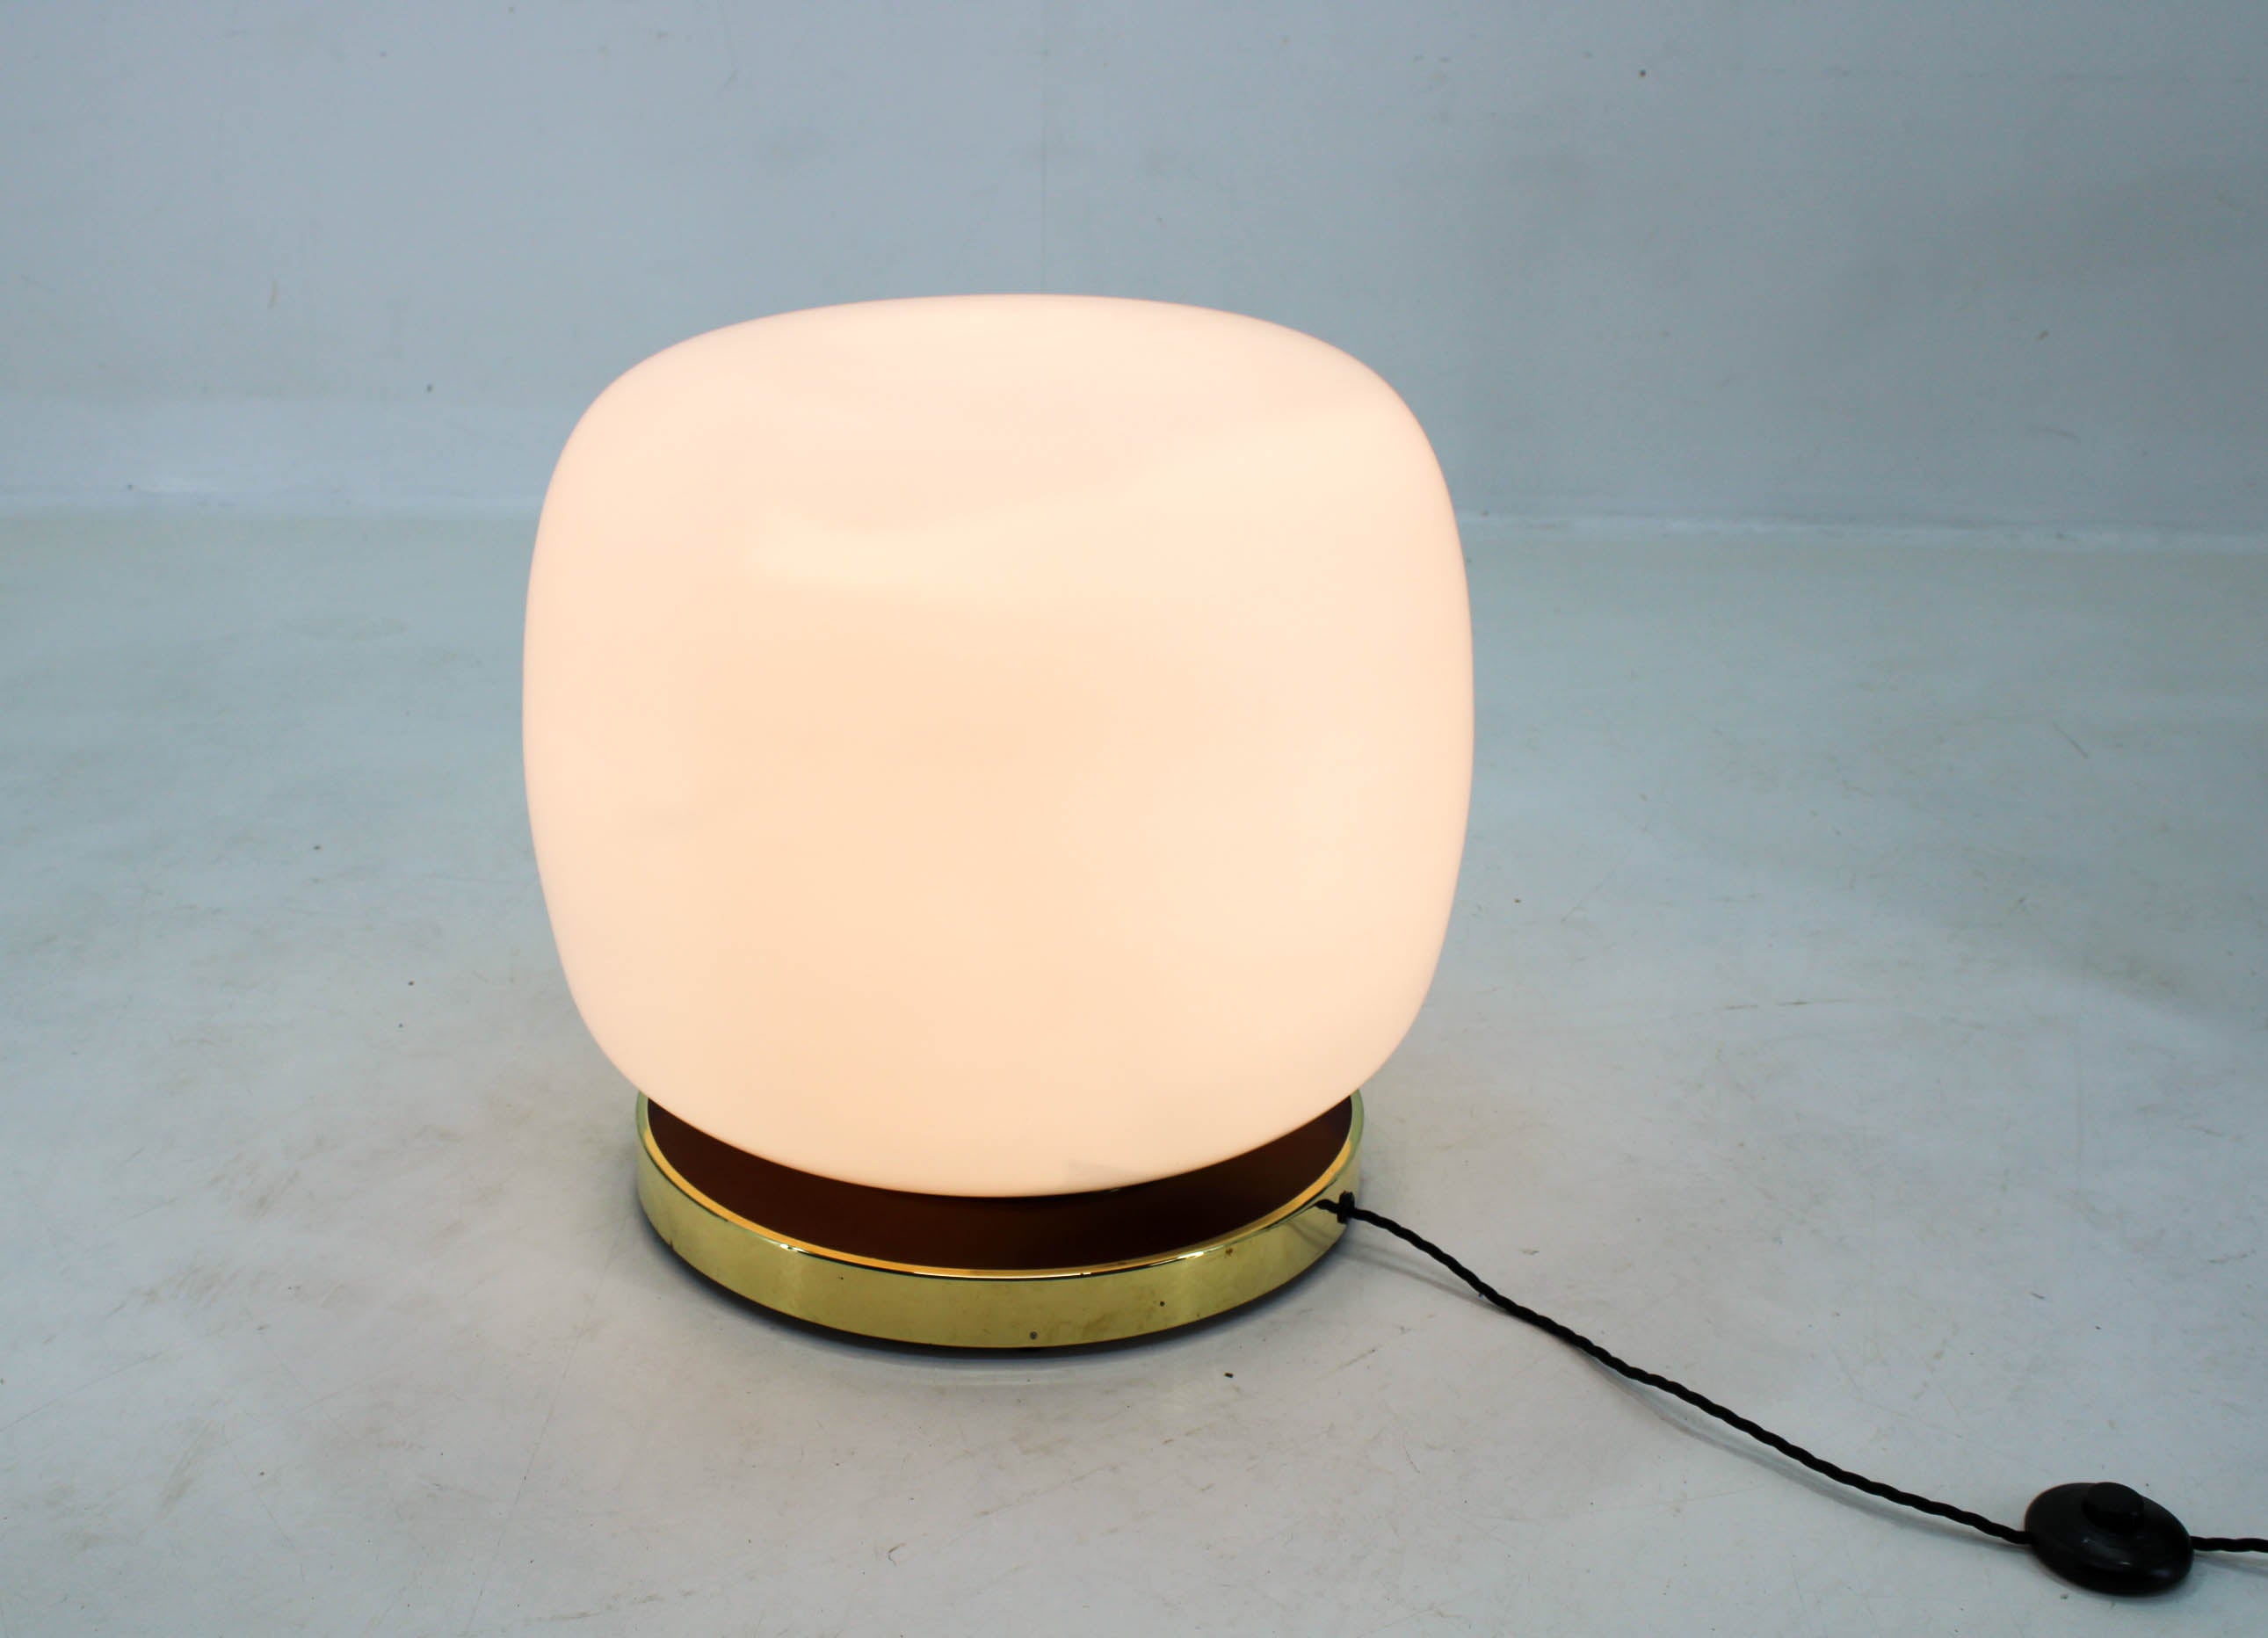 Énorme lampadaire fabriqué par Kamenicky Senov en Tchécoslovaquie à la fin des années 1950.
Base en laiton poli.
Câblé : 1x100W, ampoule E25-E27
Adaptateur pour prise américaine inclus